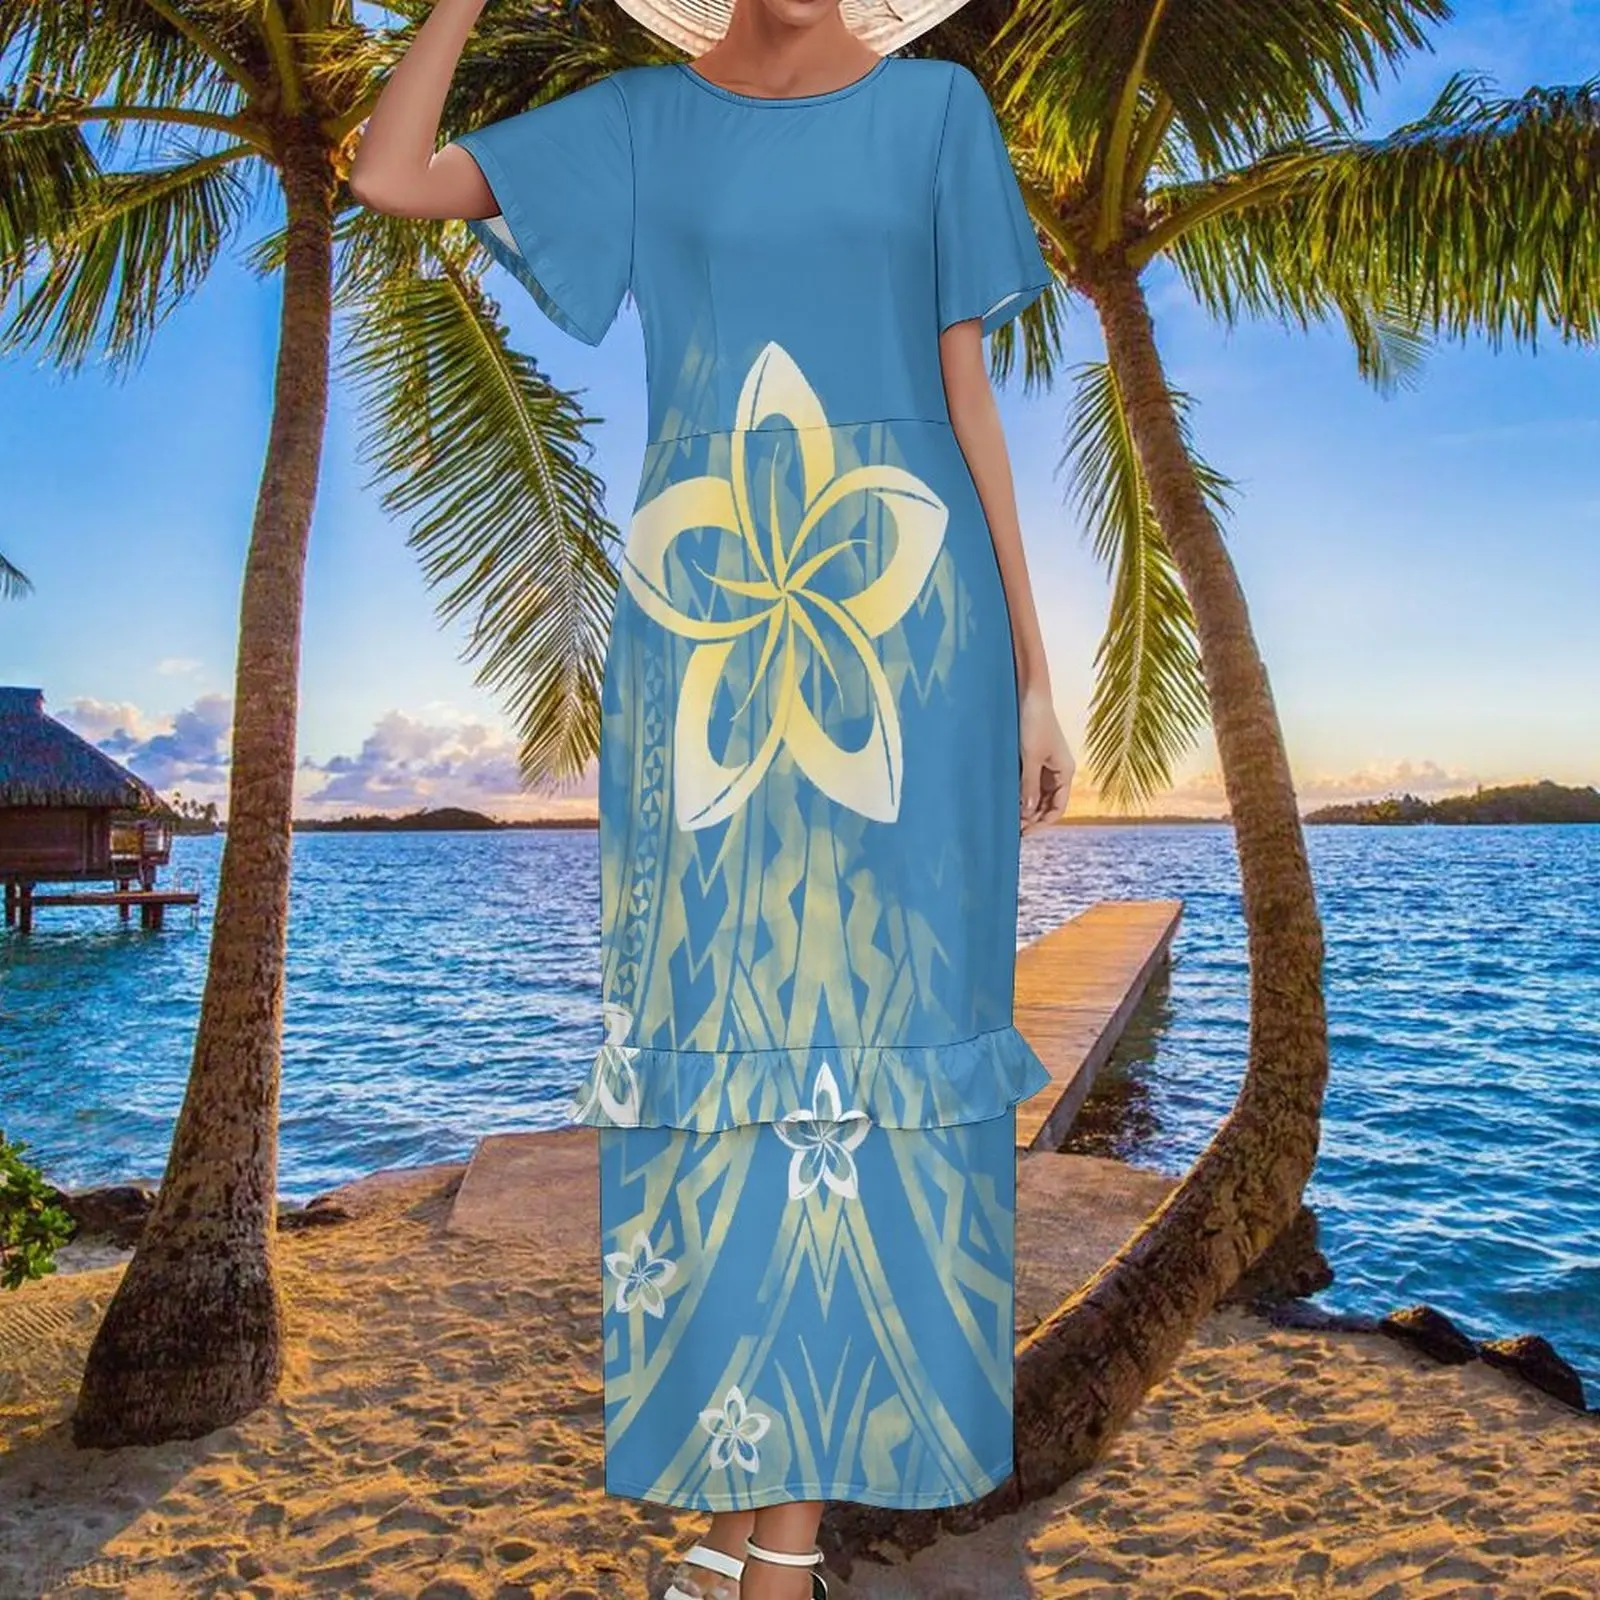 Robe à manches courtes pour femmes, bleu, jupe tubulaire, fleurs, hawaii, grande taille 8XL, maxi, pour les vacances à la plage, nouvelle collection été